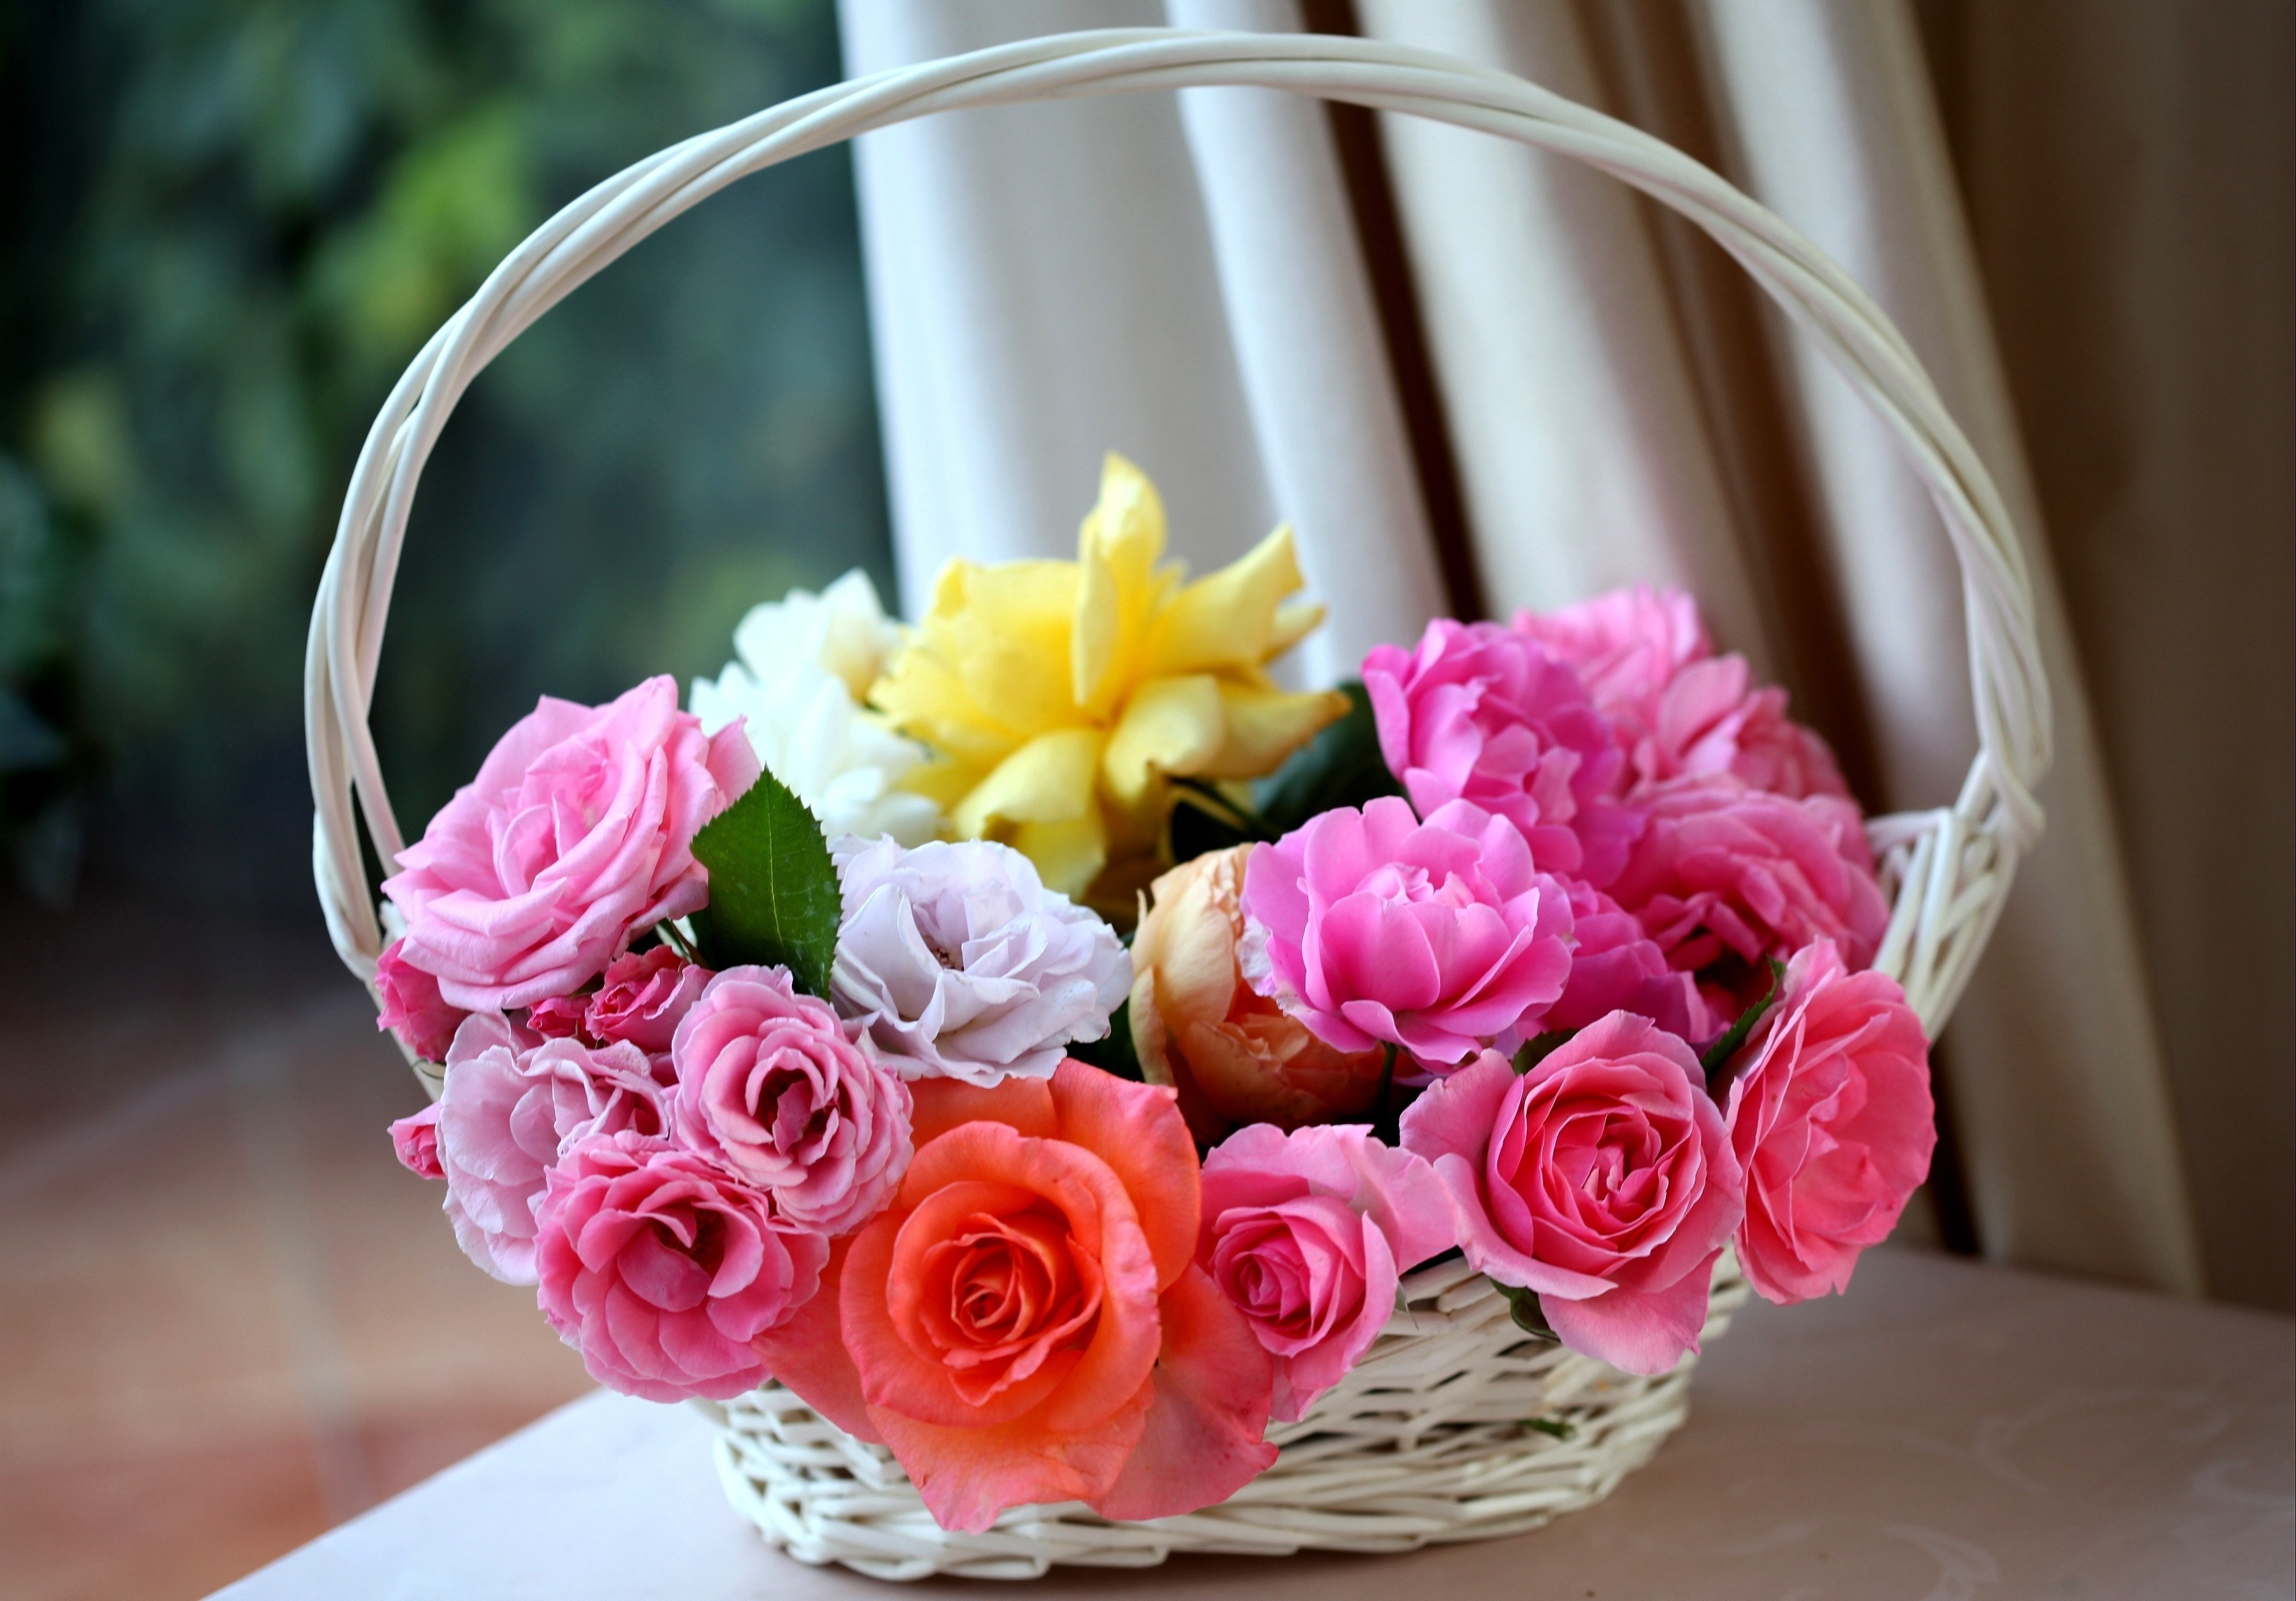 basket, roses, flowers, buds, charm, lukoshko images